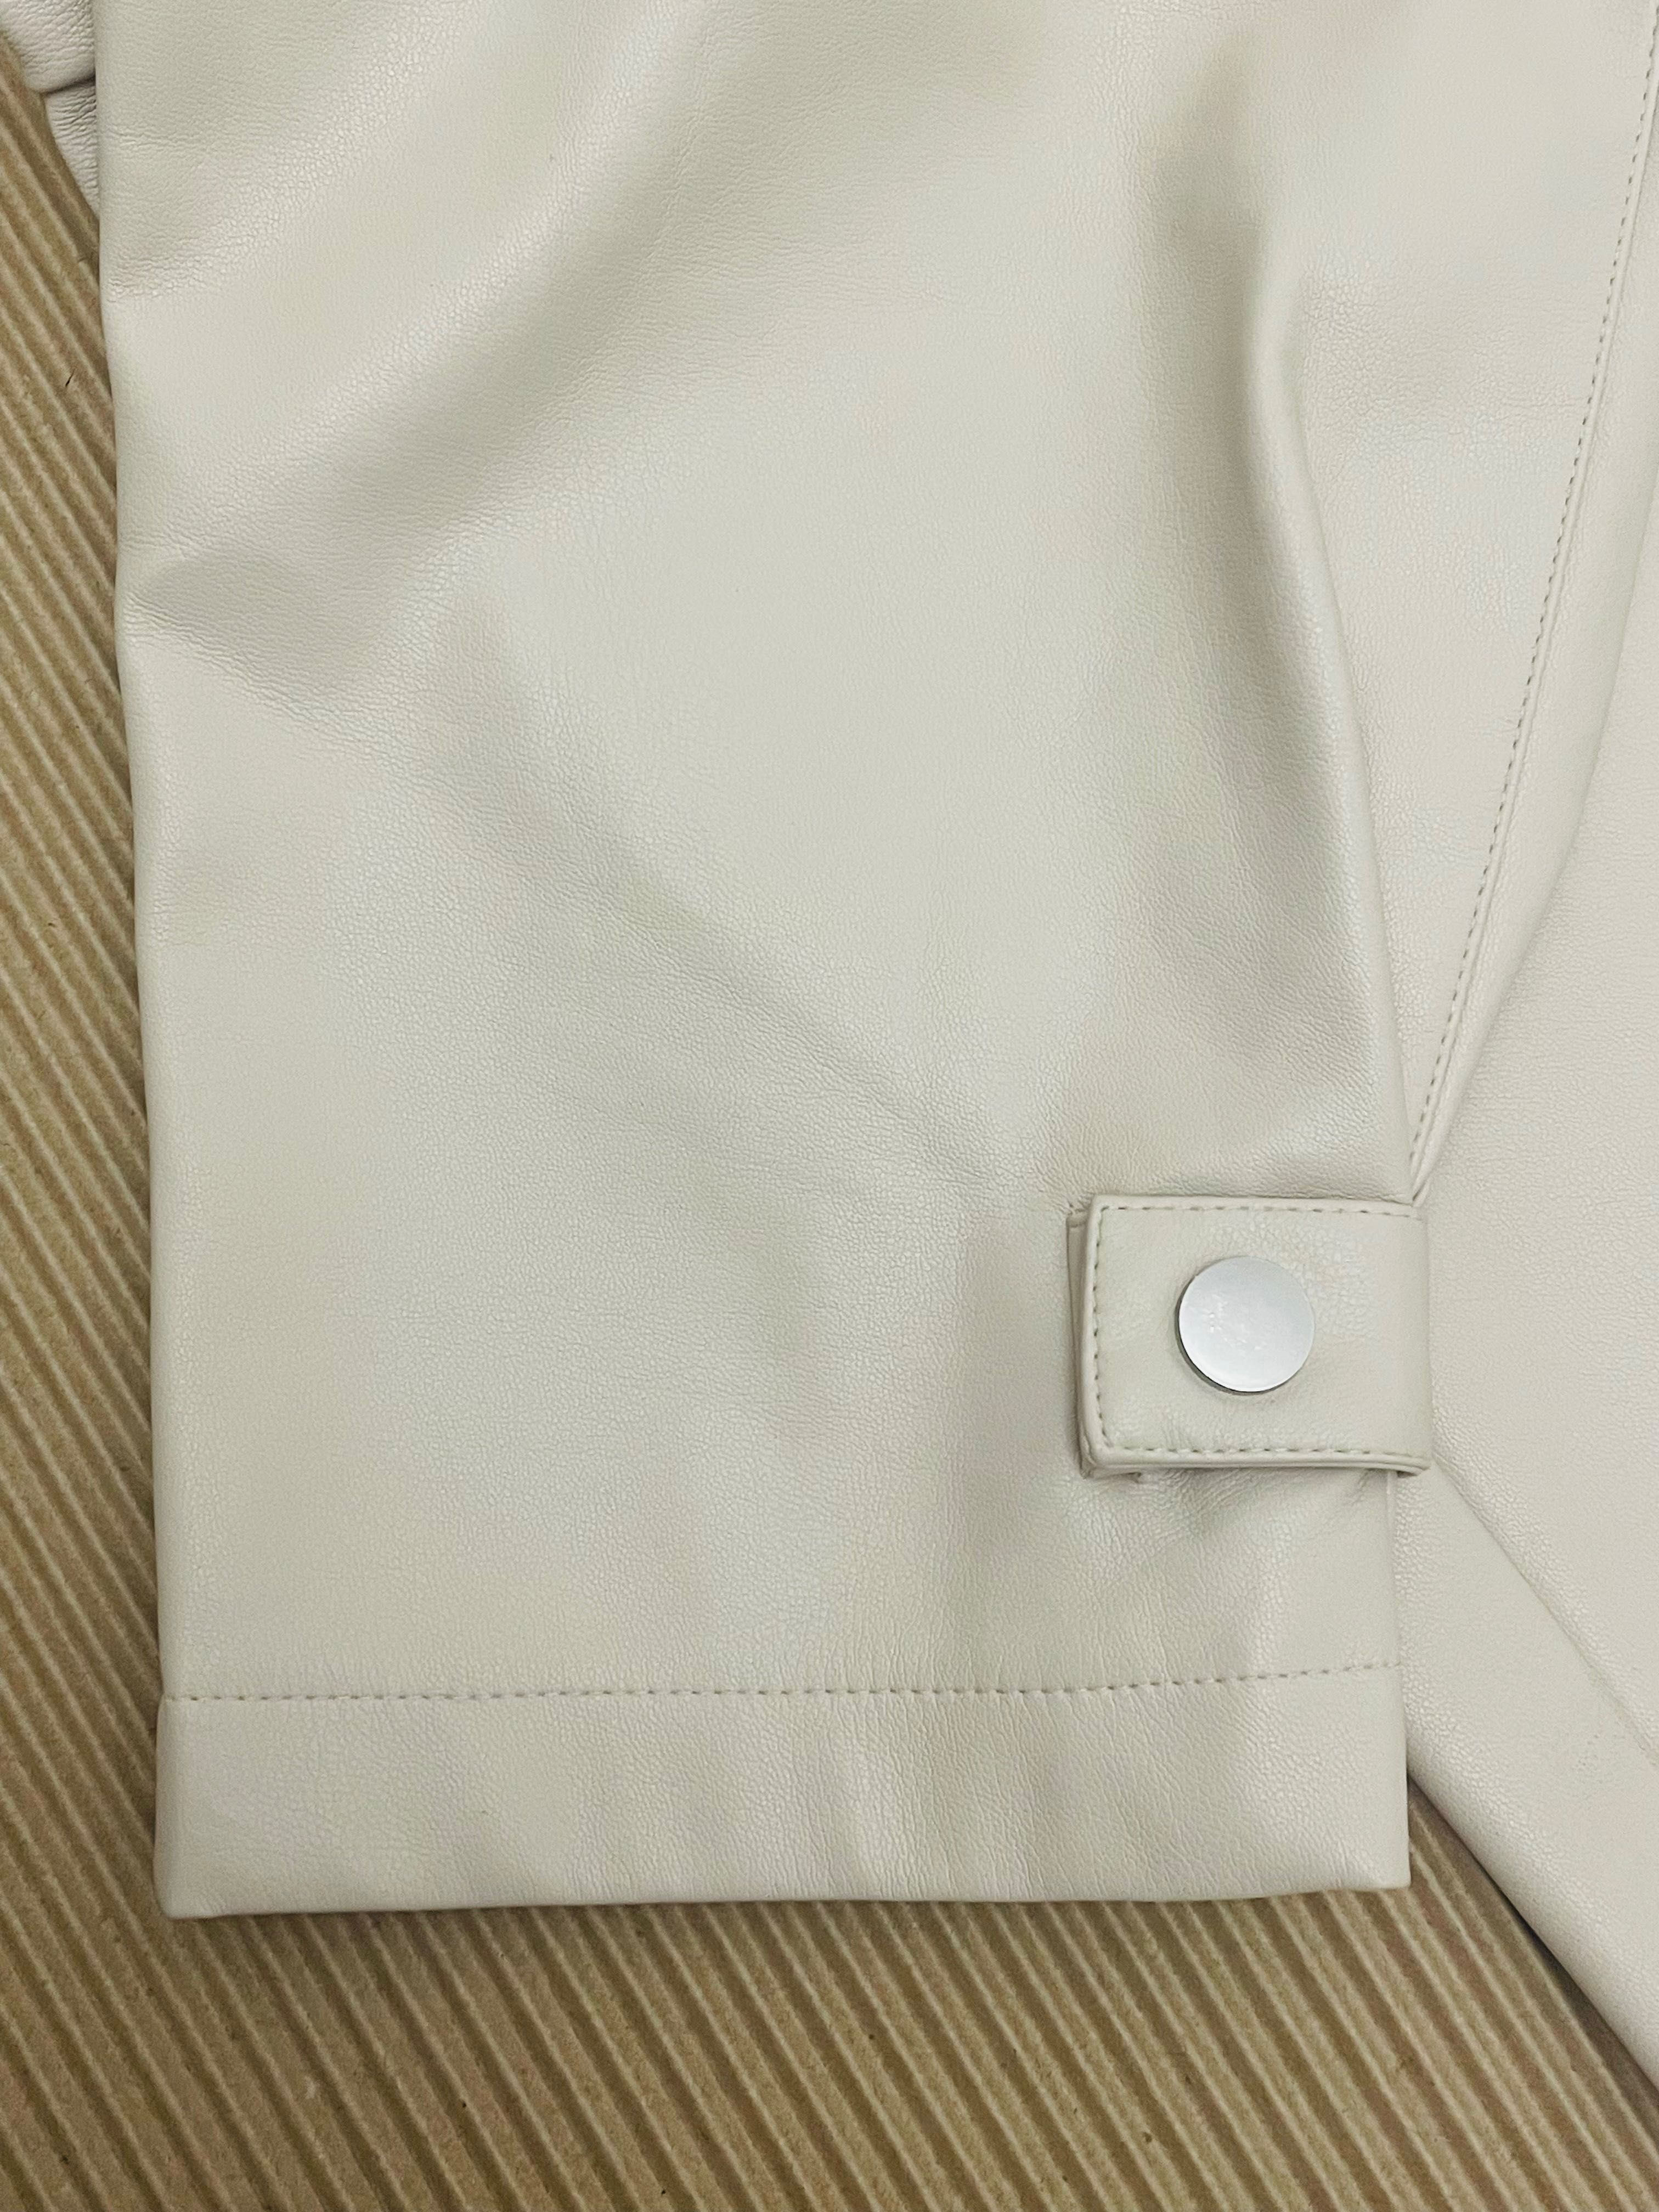 Zara дамски панталон еко кожа, p.XS/S